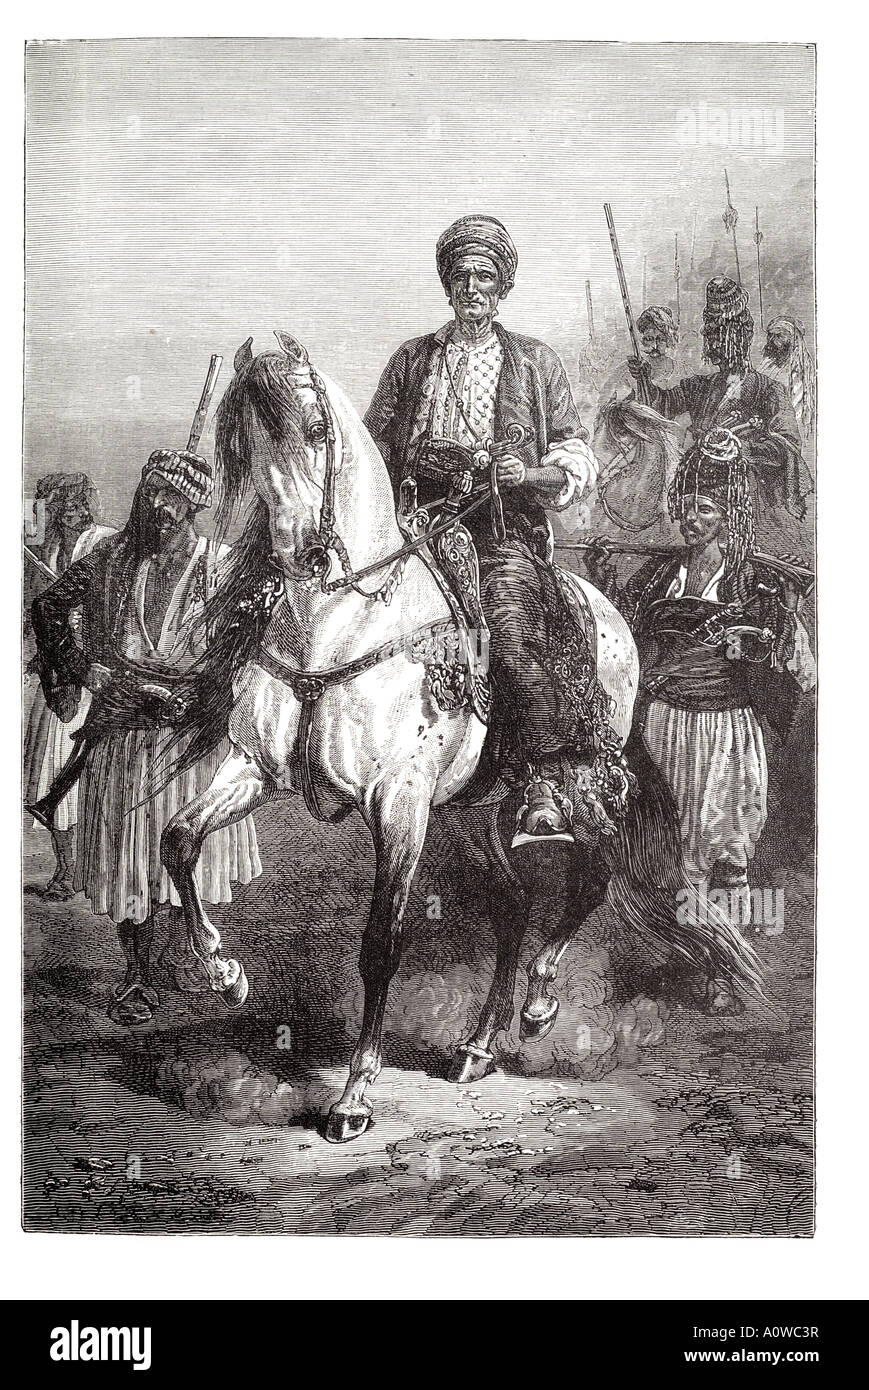 Kara Fátima kurdo Regal Princess Royal monarquía Persia Asia mujer viaje a caballo semental procesión de la guardia de caballería traje silla Foto de stock